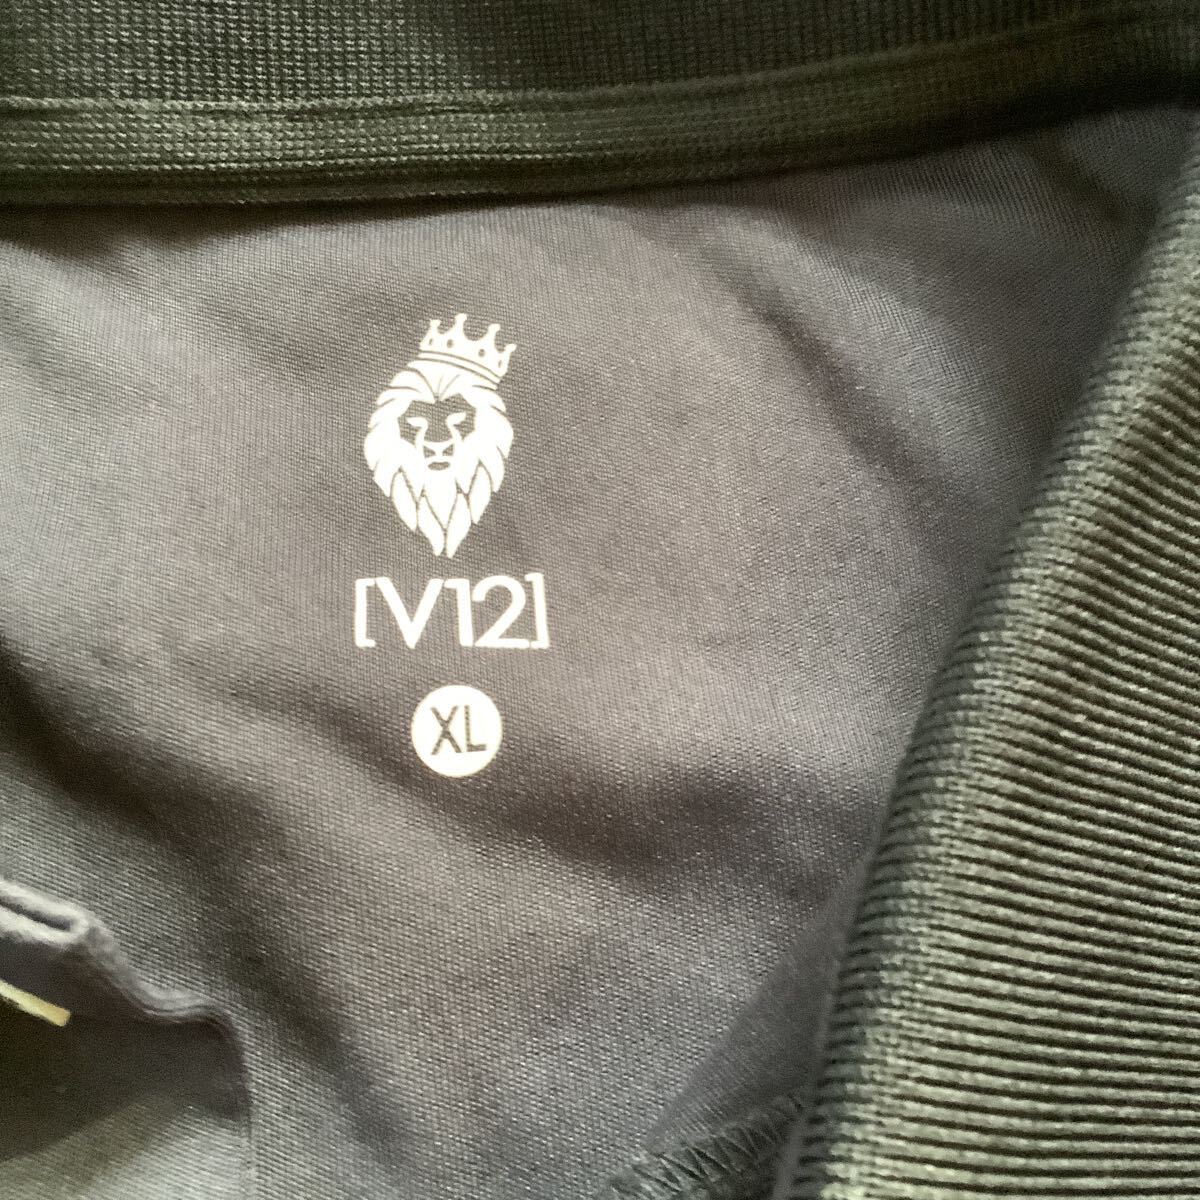  V12 ヴィ・トゥエルヴ メンズポロシャツ